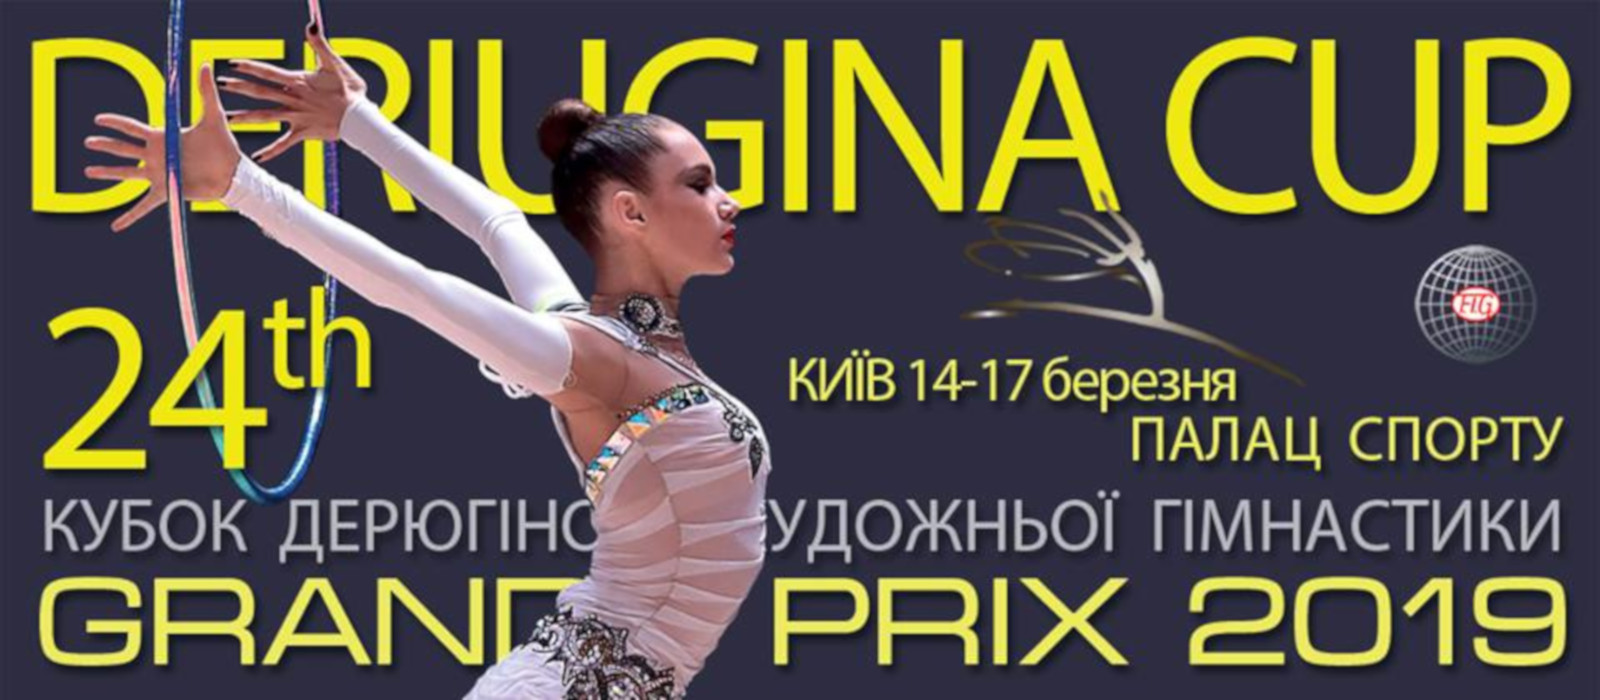 Kiev GP Derugina Cup 2019